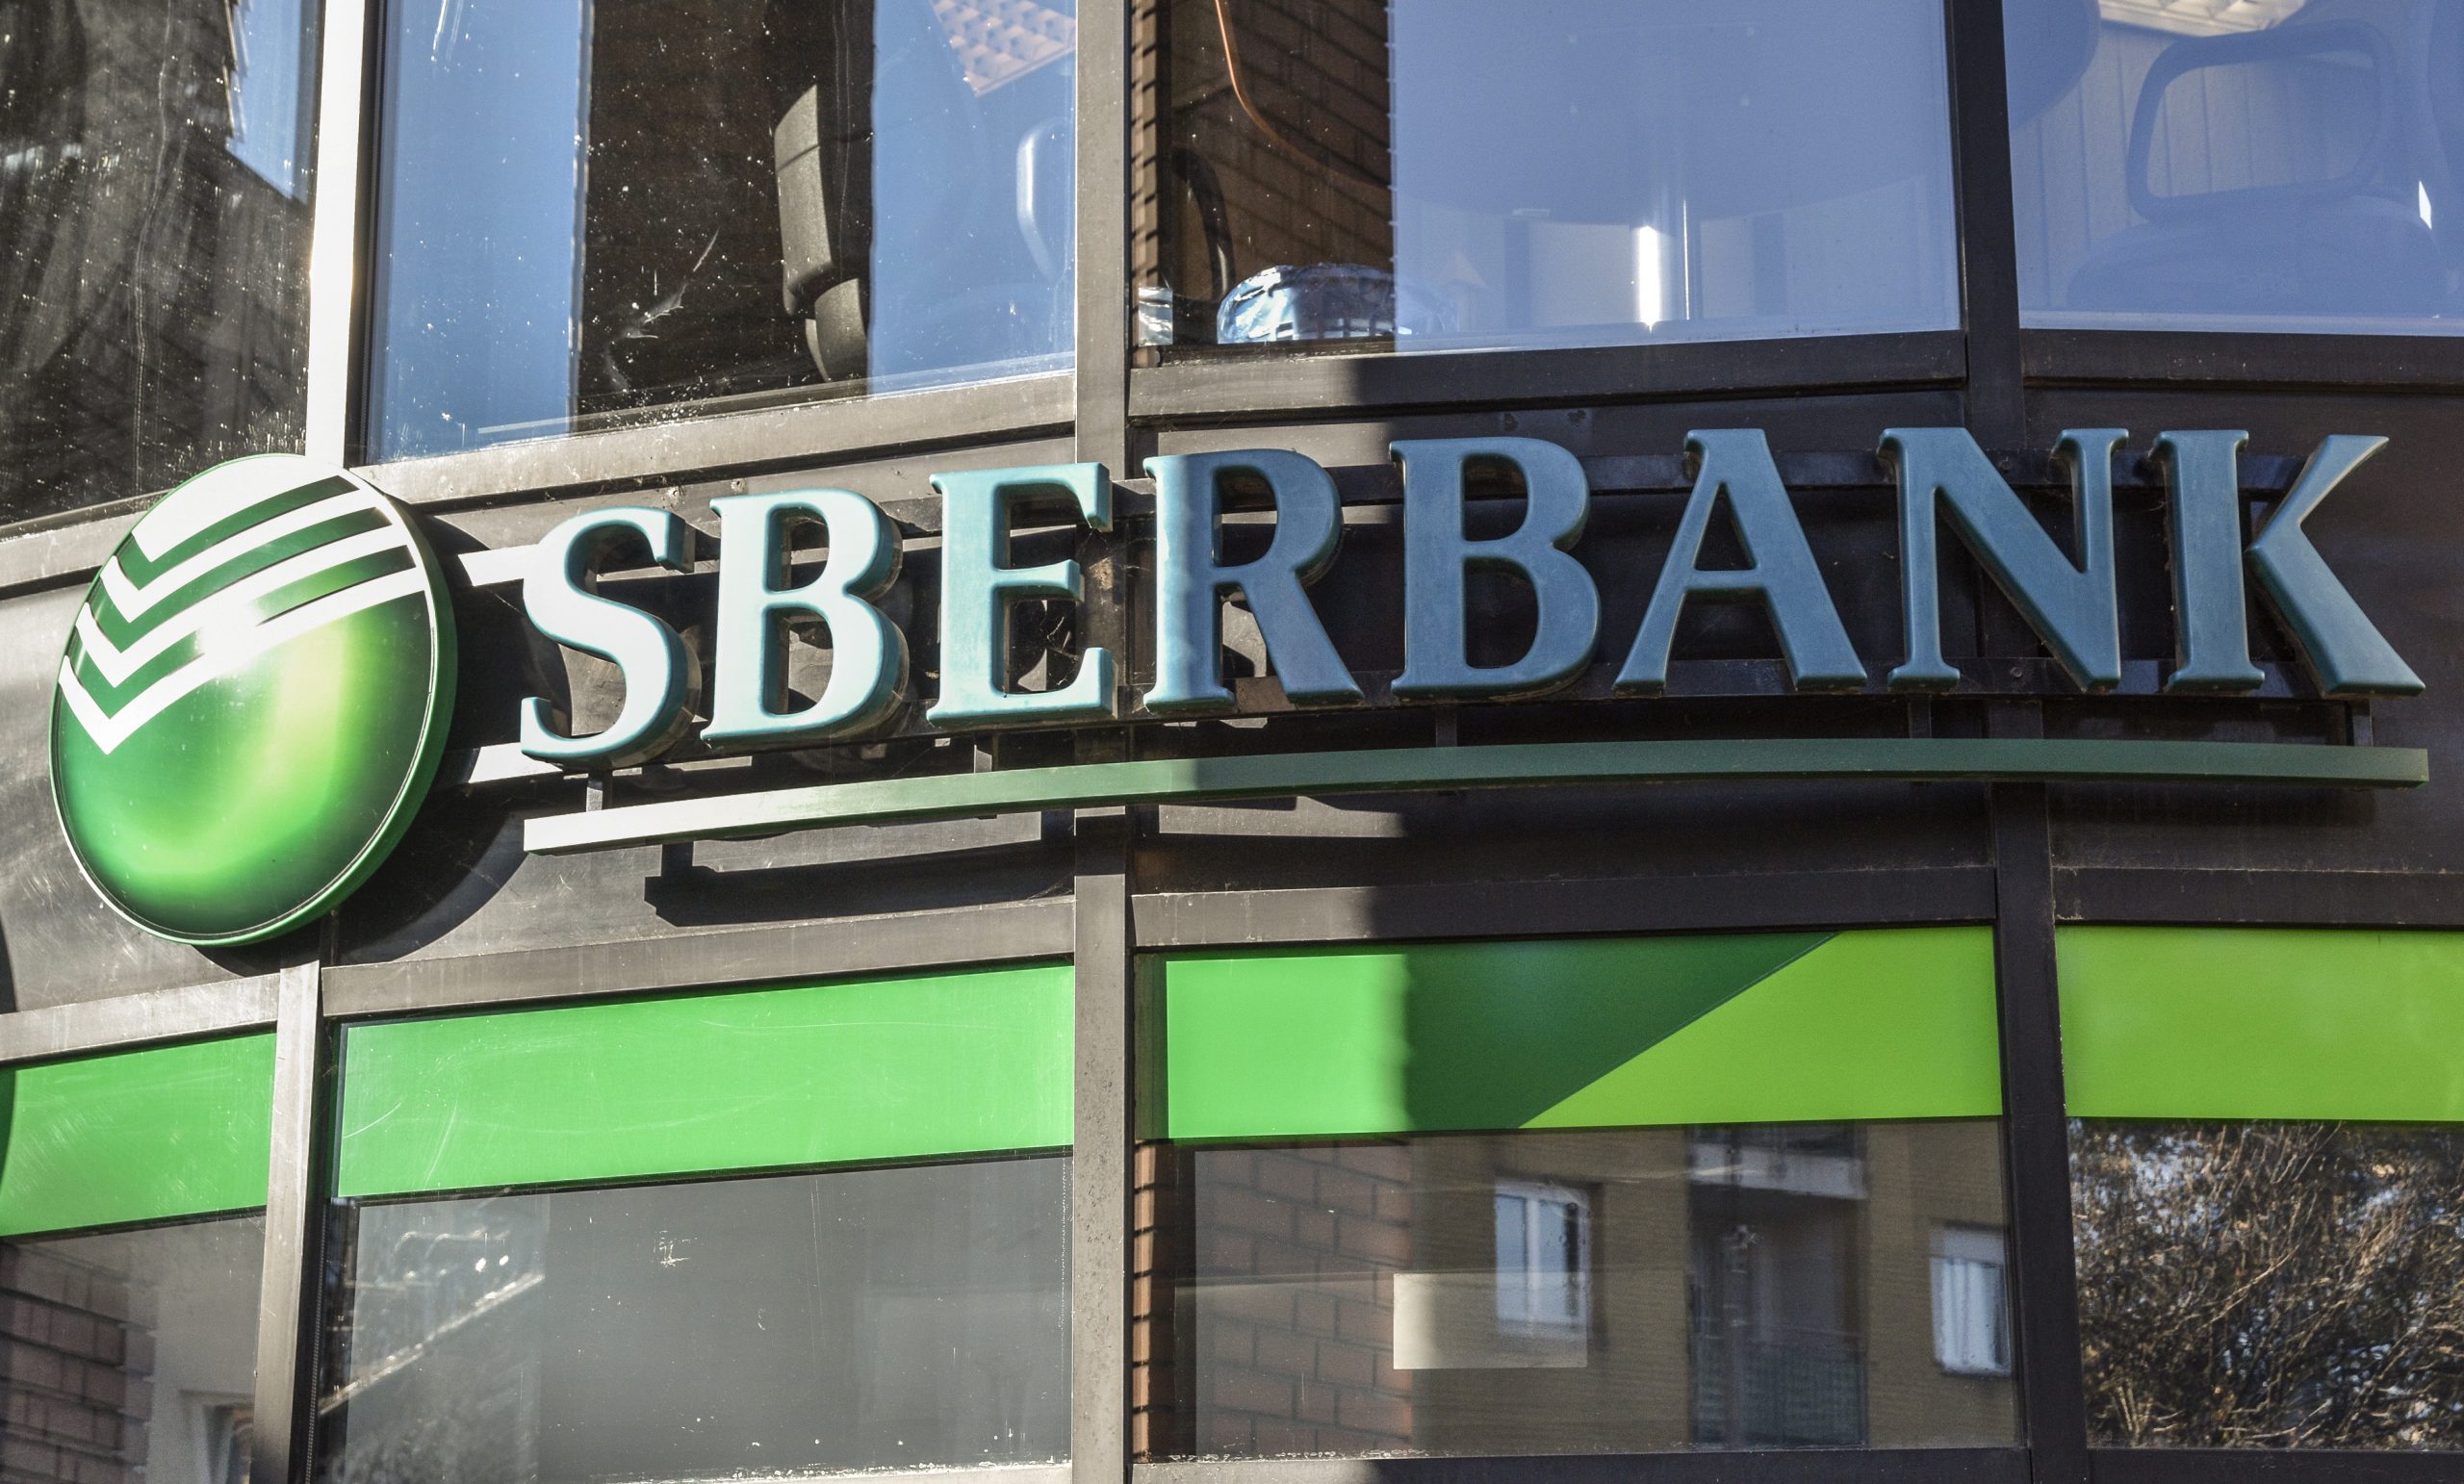 Lokale Einheit der russischen Sberbank hält aus Angst vor dem Bankrott einen Bankfeiertag ab